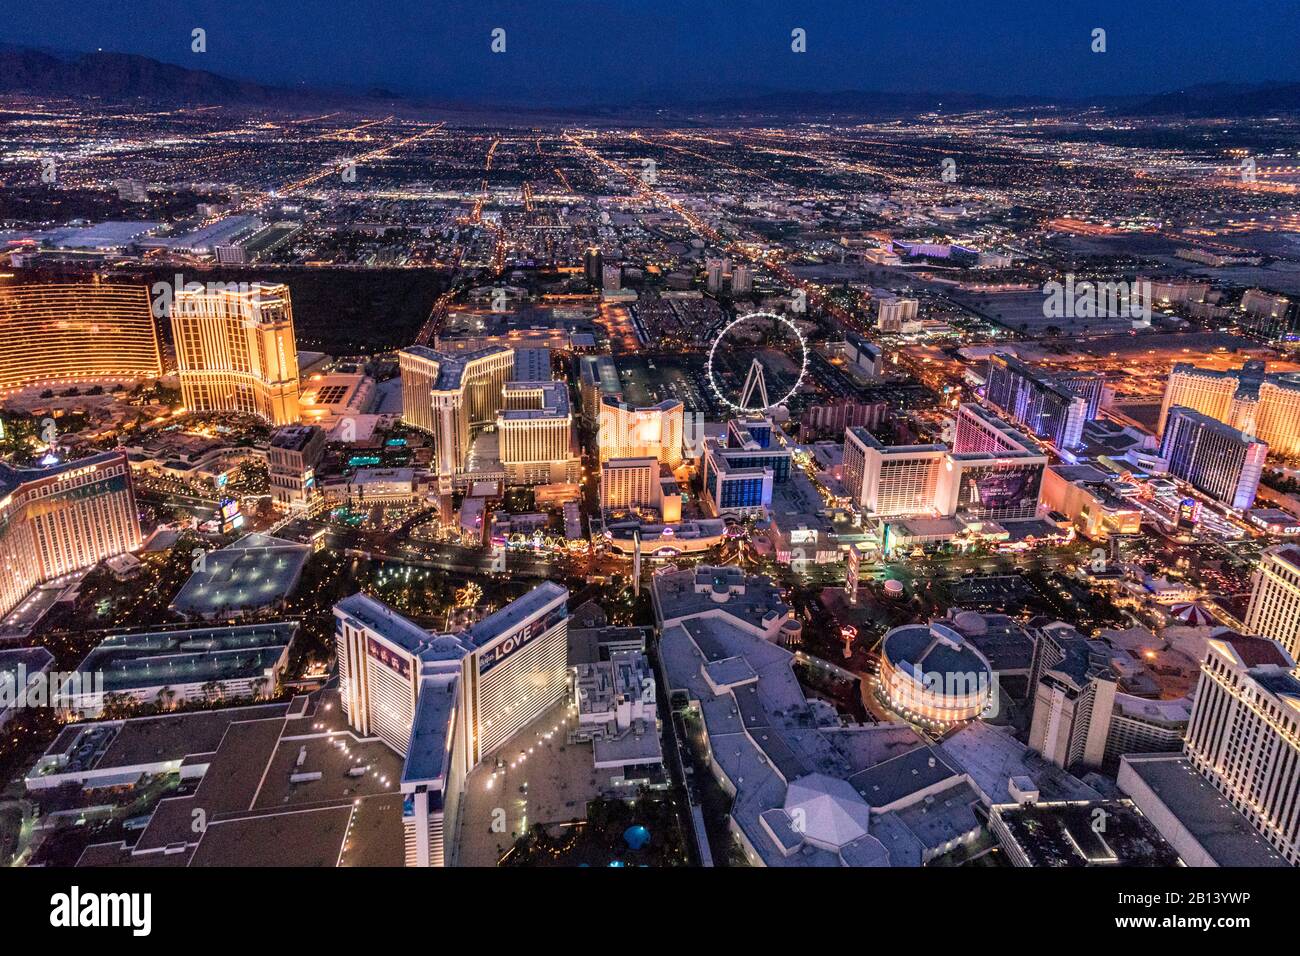 LA TIRA, fotografía aérea desde helicóptero al atardecer, las Vegas, Nevada, EE.UU Foto de stock